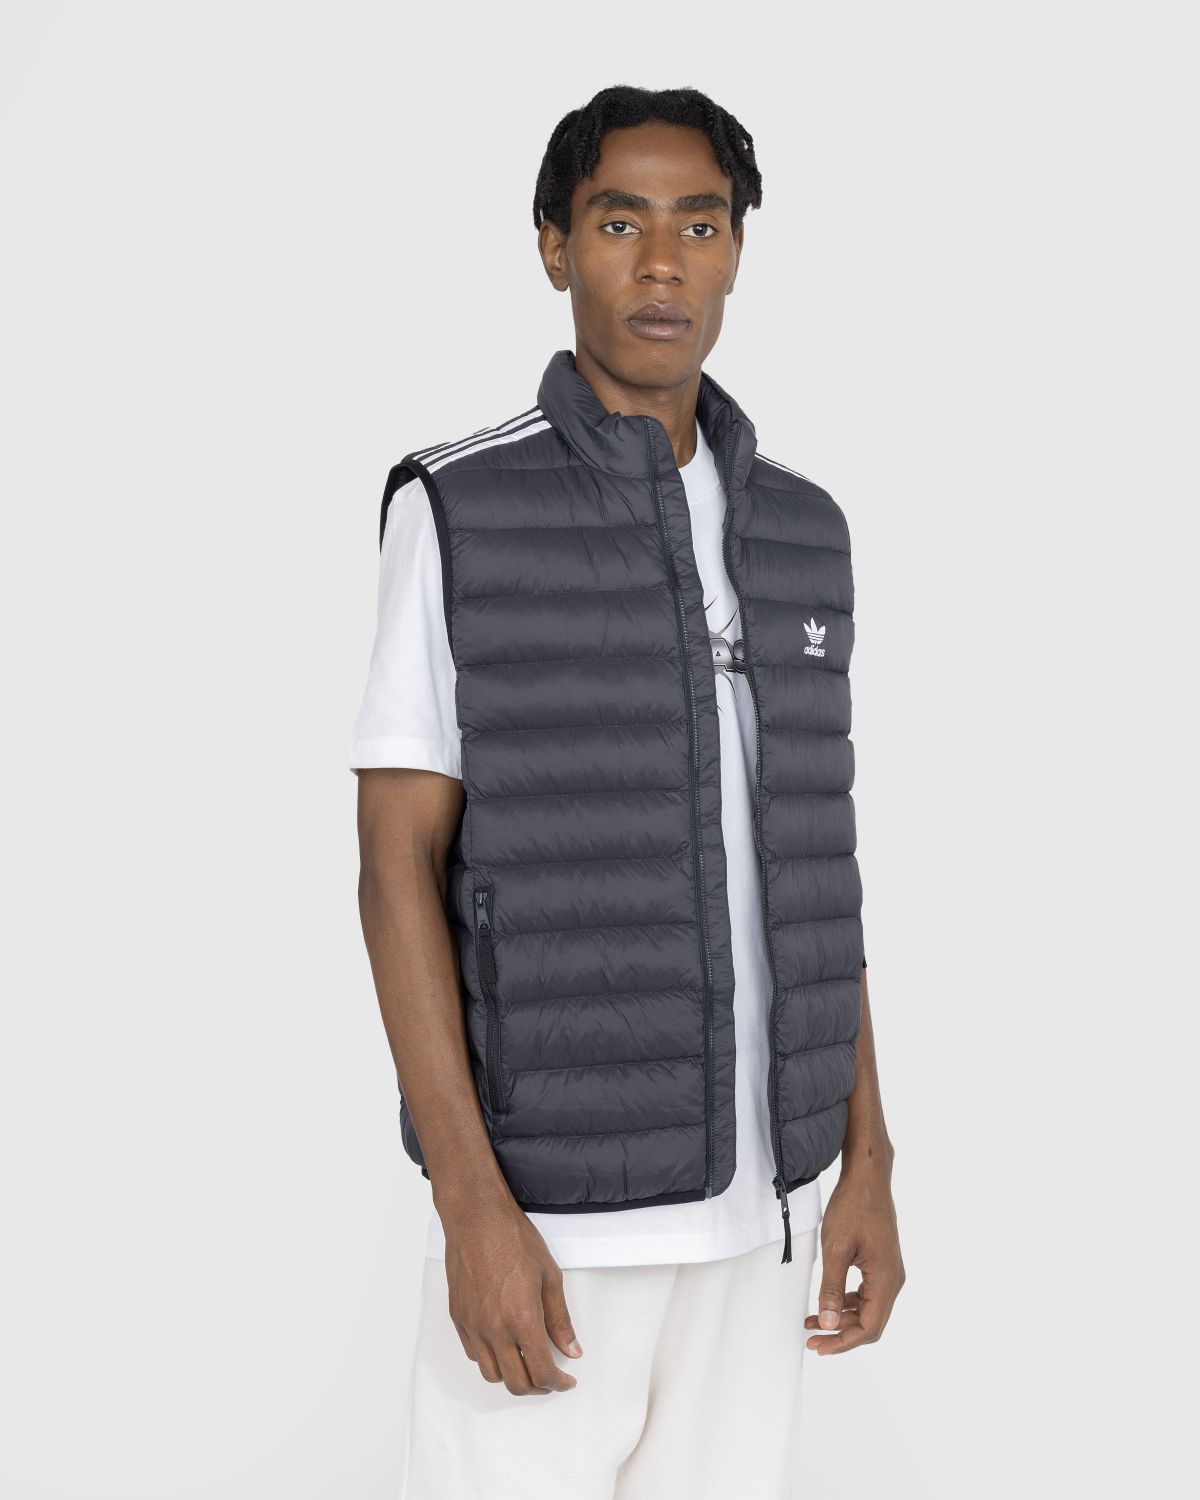 Adidas – Padded Vest Black/White | Shop Highsnobiety